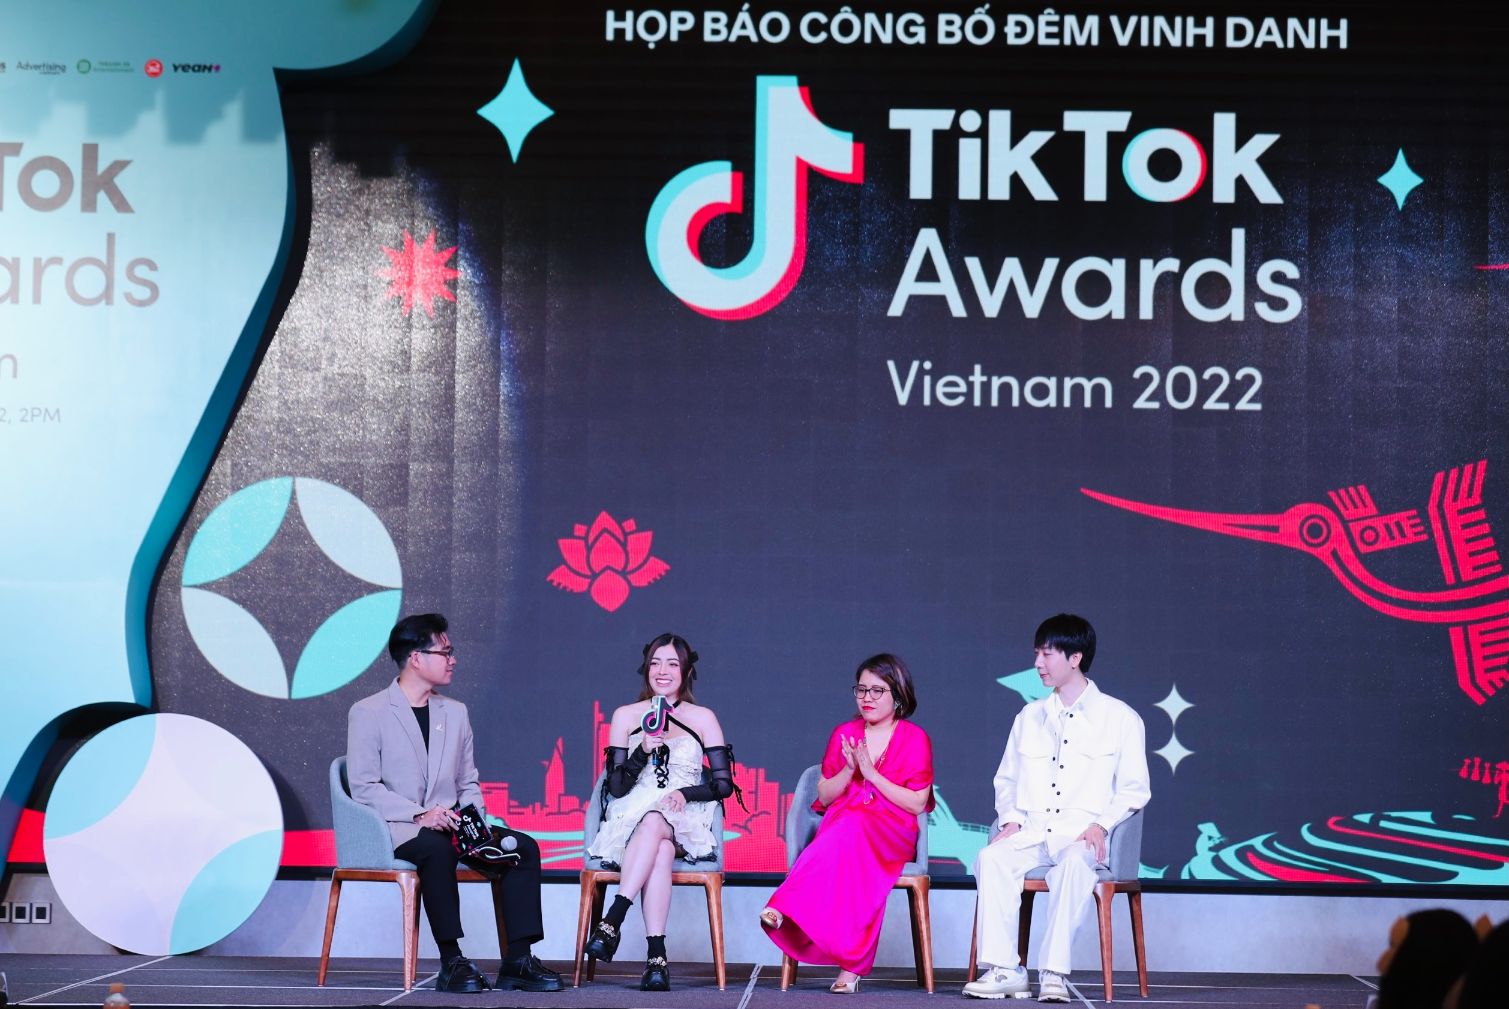 Phần chia sẻ của Đại diện TikTok và các nhà sáng tạo nội dung TikTok Awards Việt Nam 2022: Tôn vinh những sáng tạo truyền cảm hứng tích cực đến cộng đồng